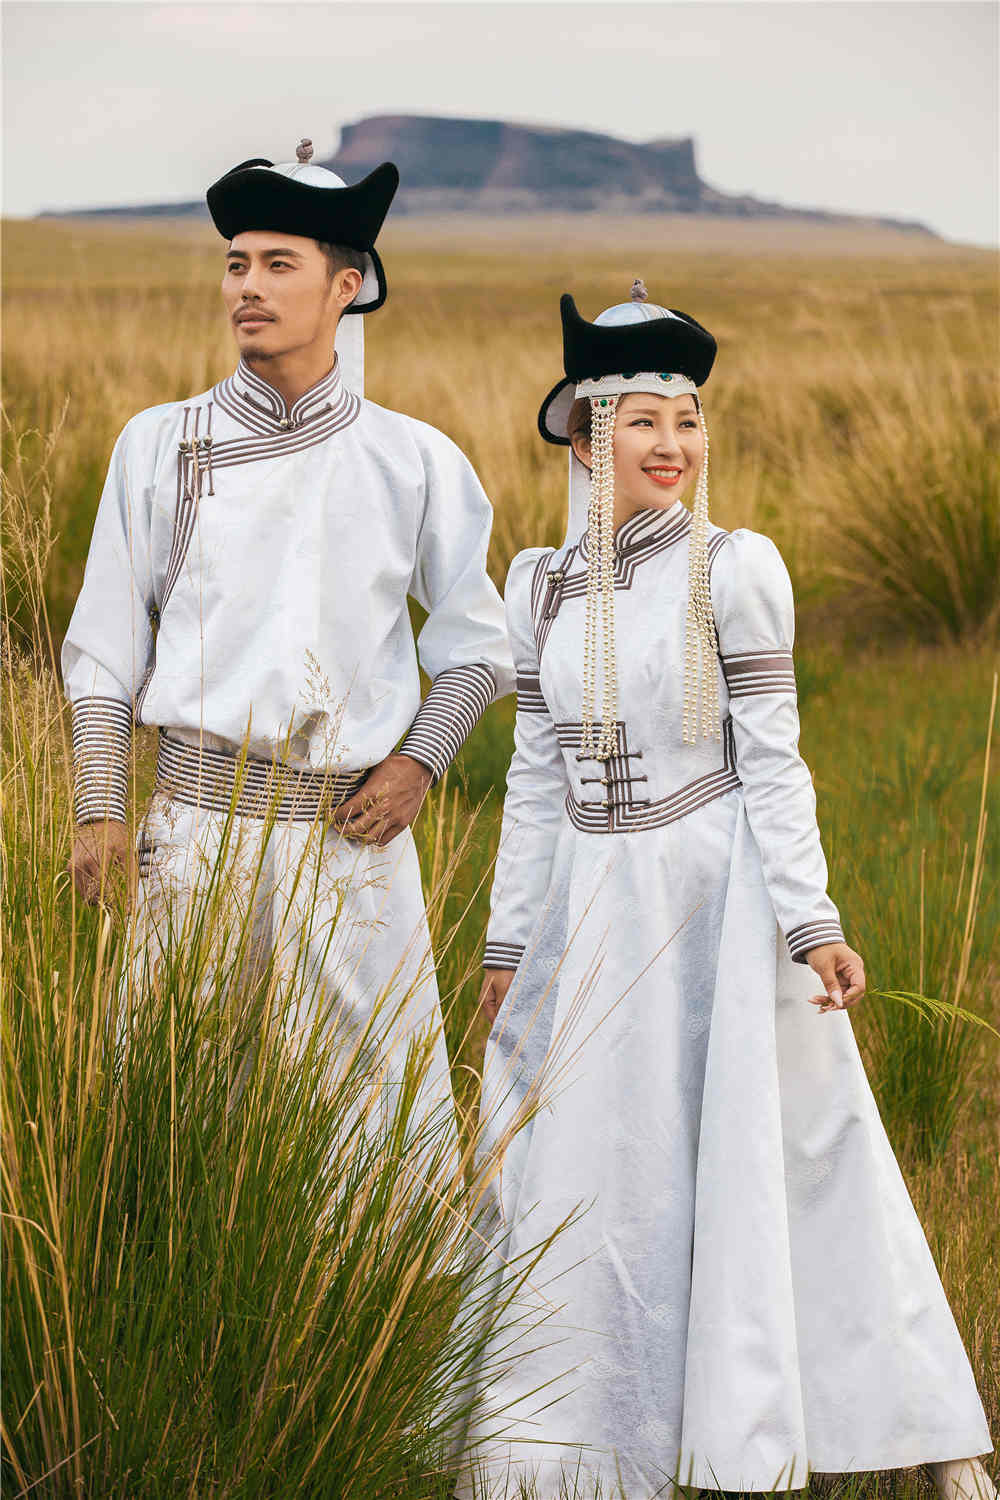 分享一组蒙古风情味的婚纱照